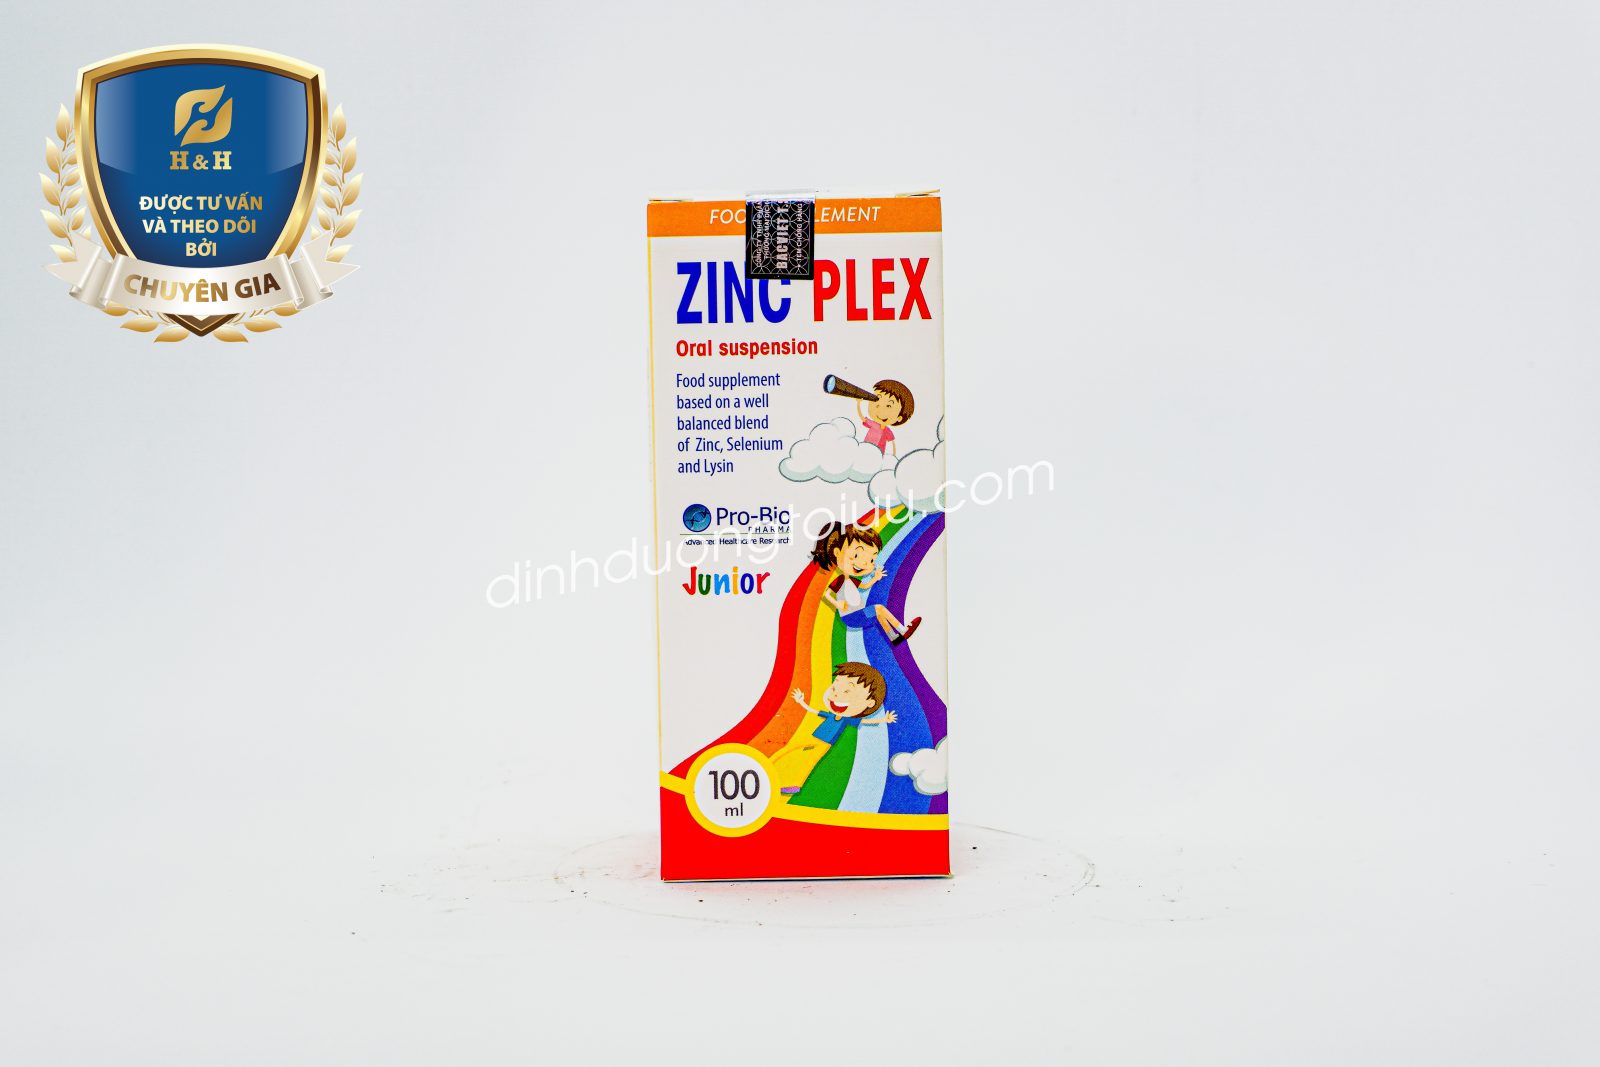 Thực phẩm bảo vệ sức khỏe ZinC Plex - Sản phẩm giúp bổ sung Kẽm, Lysin, Selen và dưỡng chất có lợi cho cơ thể giúp trẻ tăng sức đề kháng, kích thích tiêu hóa